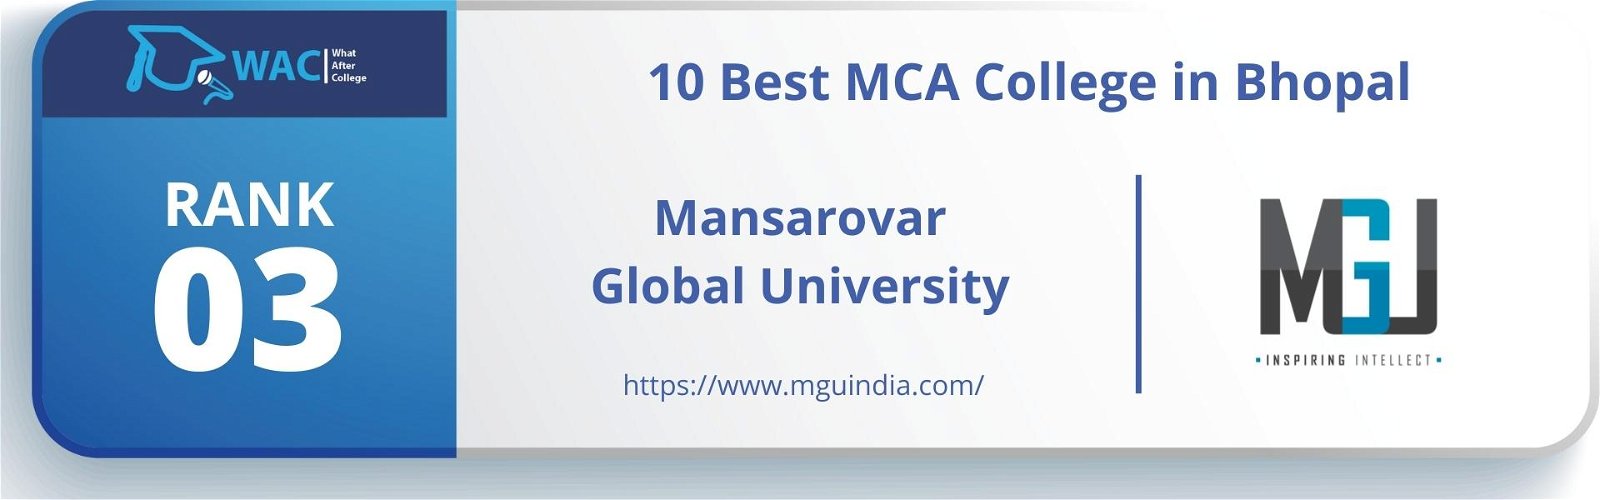 MCA College in Bhopal